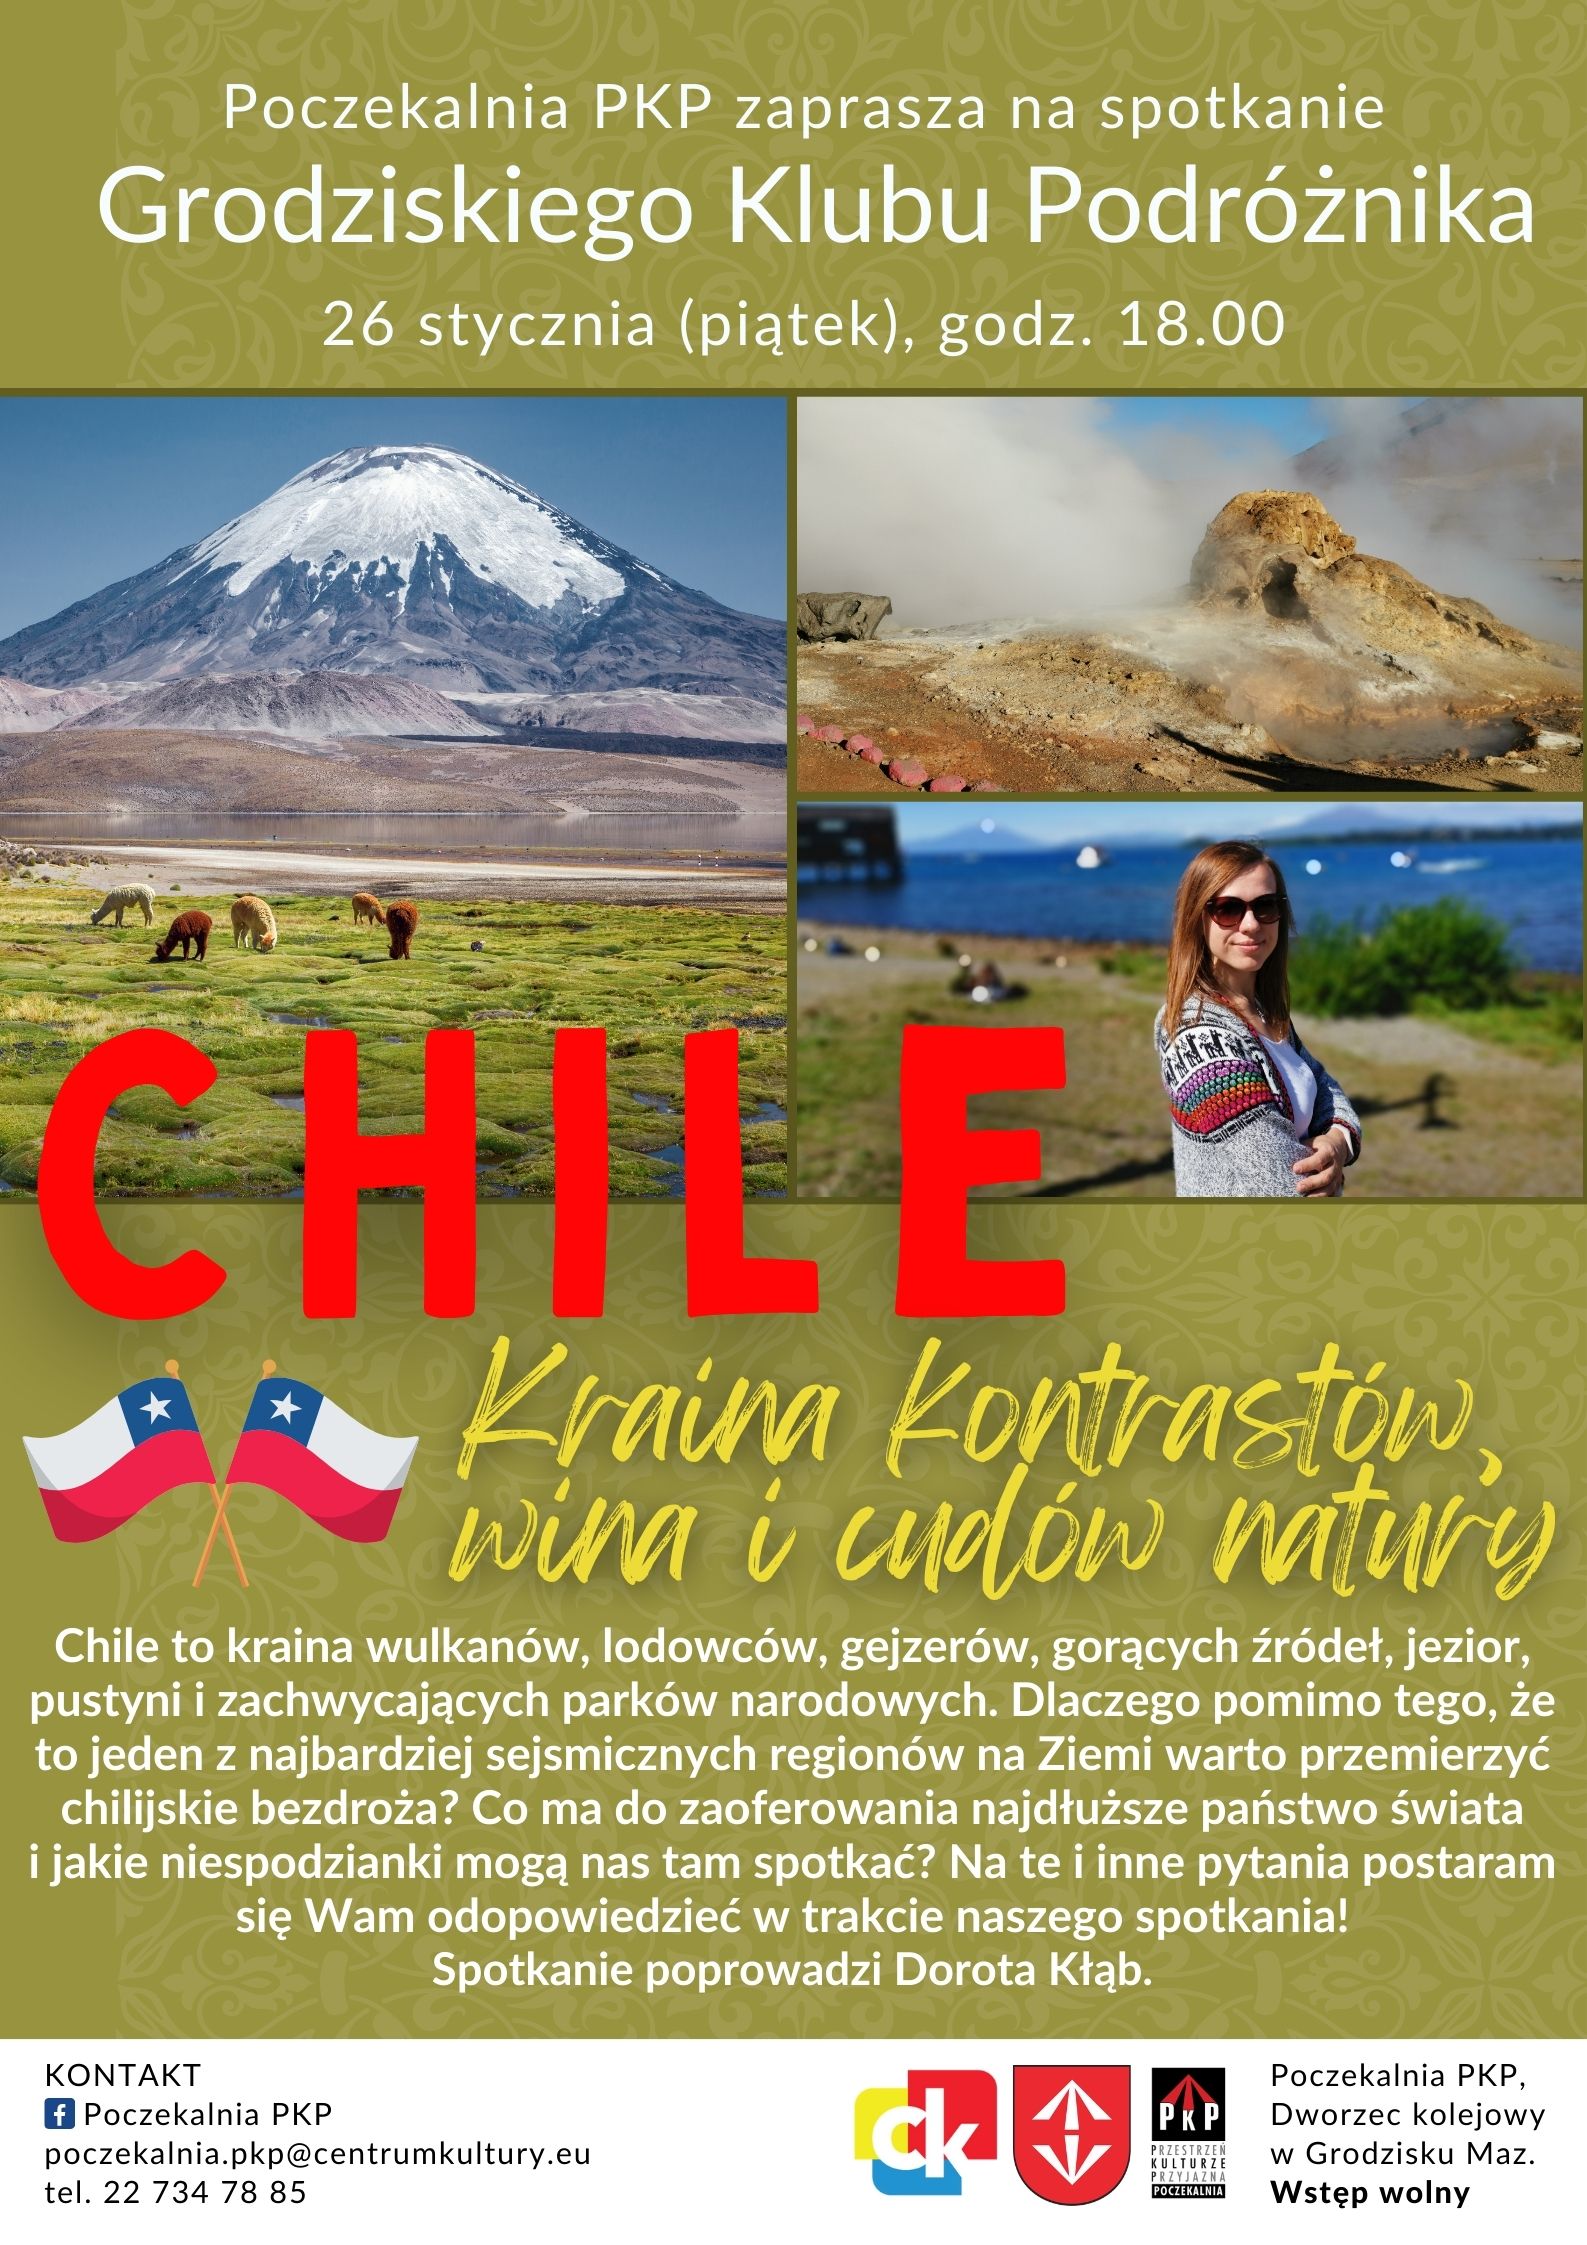 Spotkanie Grodziskiego Klubu Podróżnika podczas którego będziemy rozmawiać o Chile.